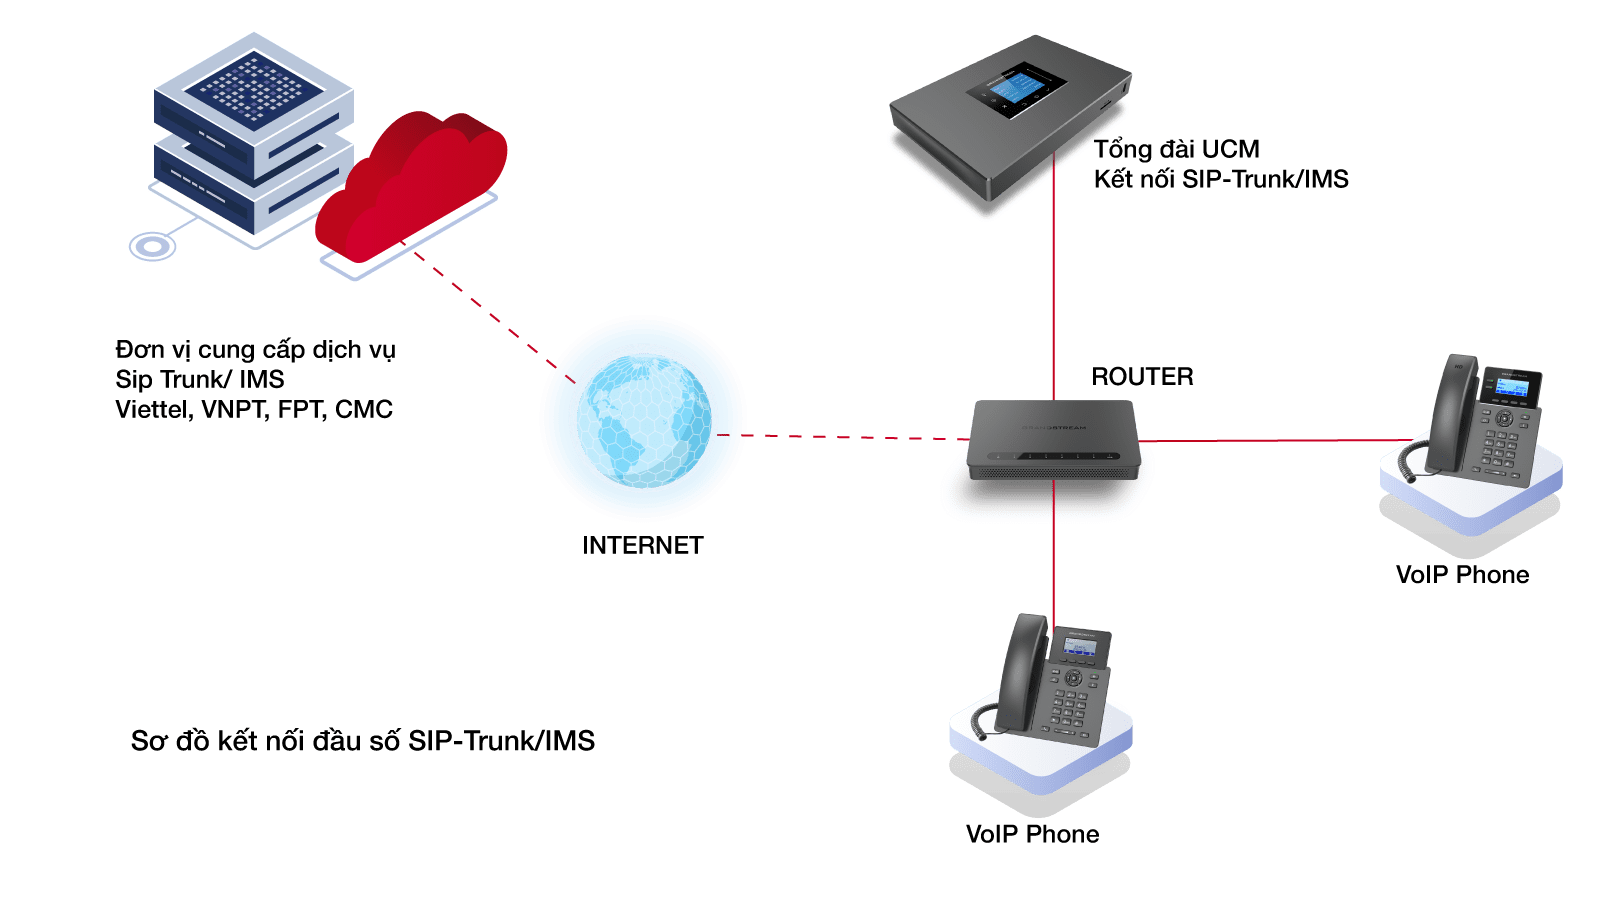 Tổng đài IP UCM6510 - 2000 IP sip license - 200 cuộc gọi đồng thời